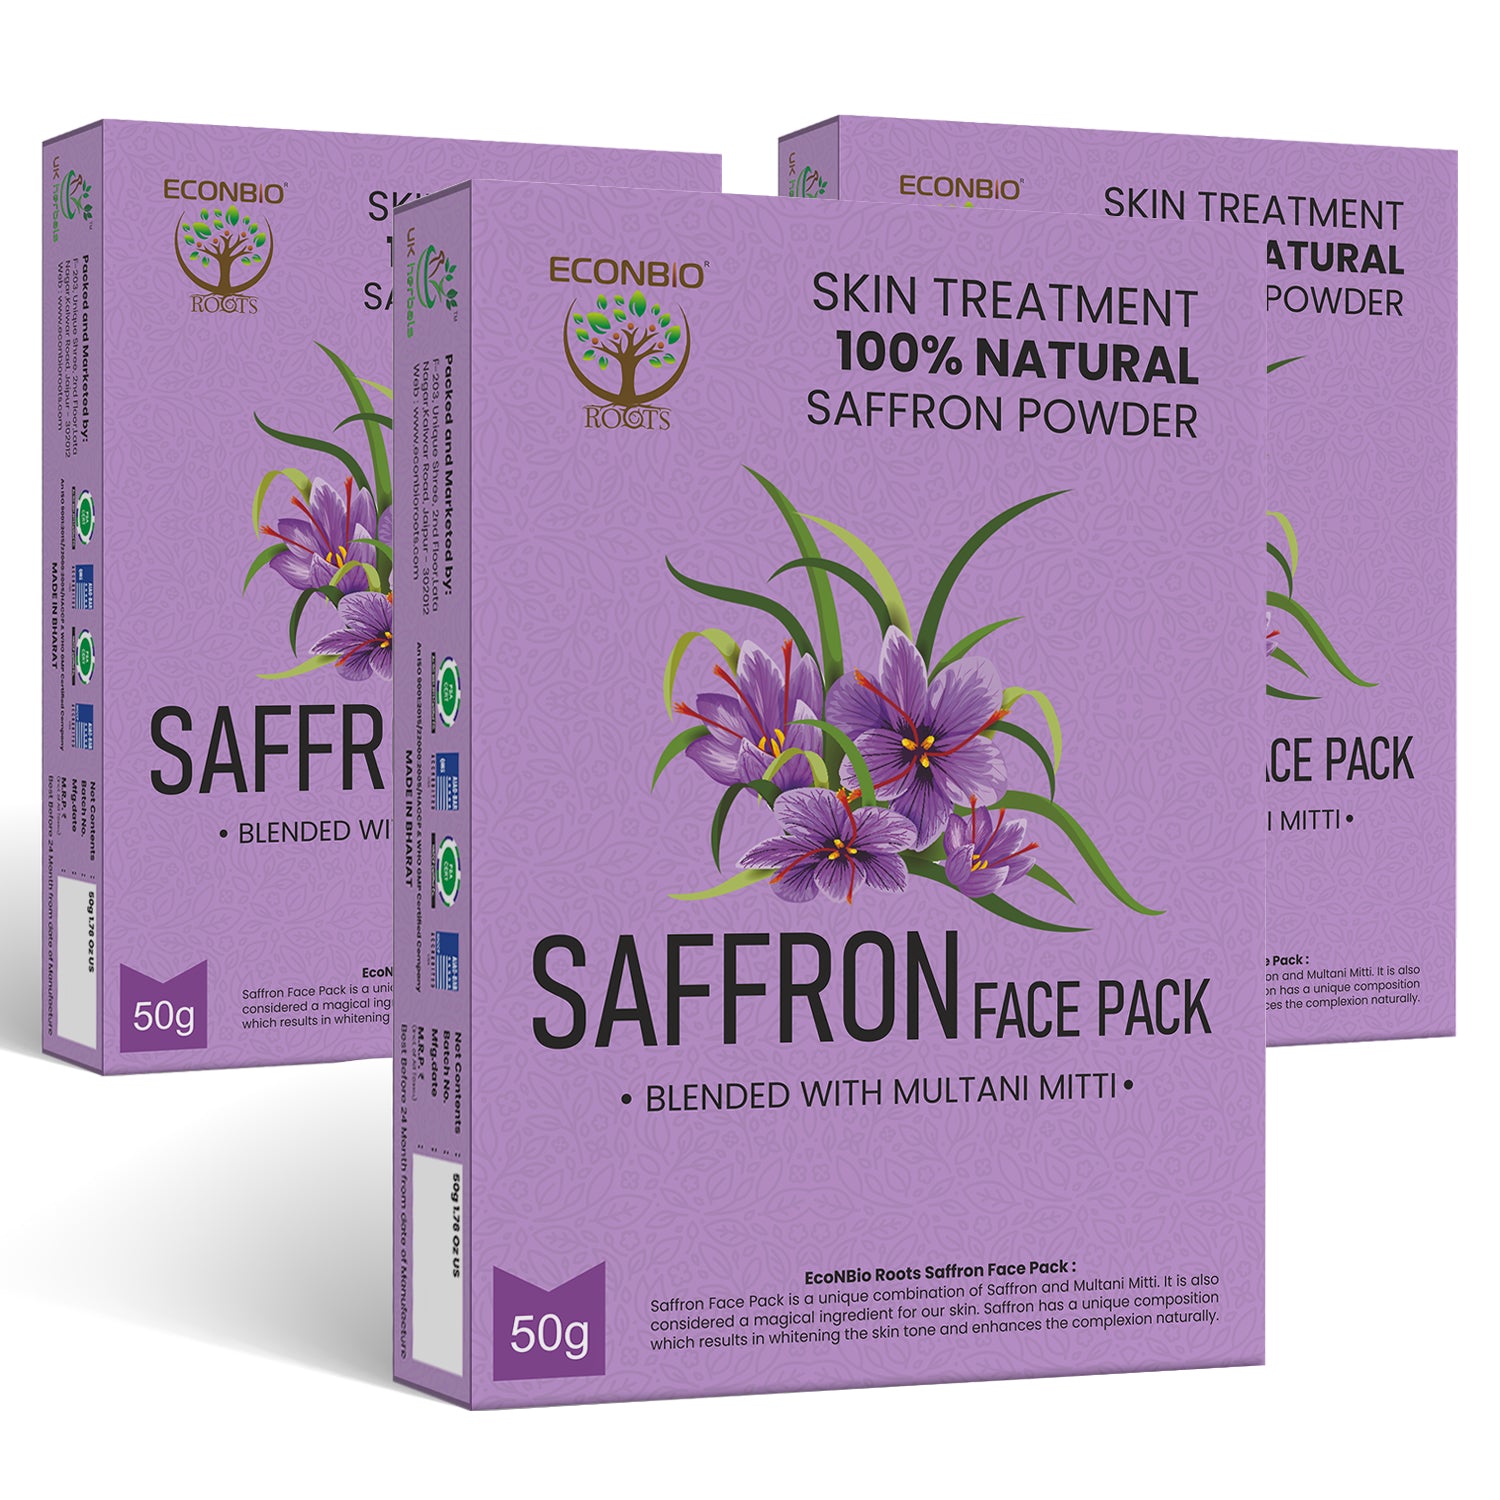 ECONBIO ROOTS 100% Natural Saffron Face Pack 50g (Pack of 3)